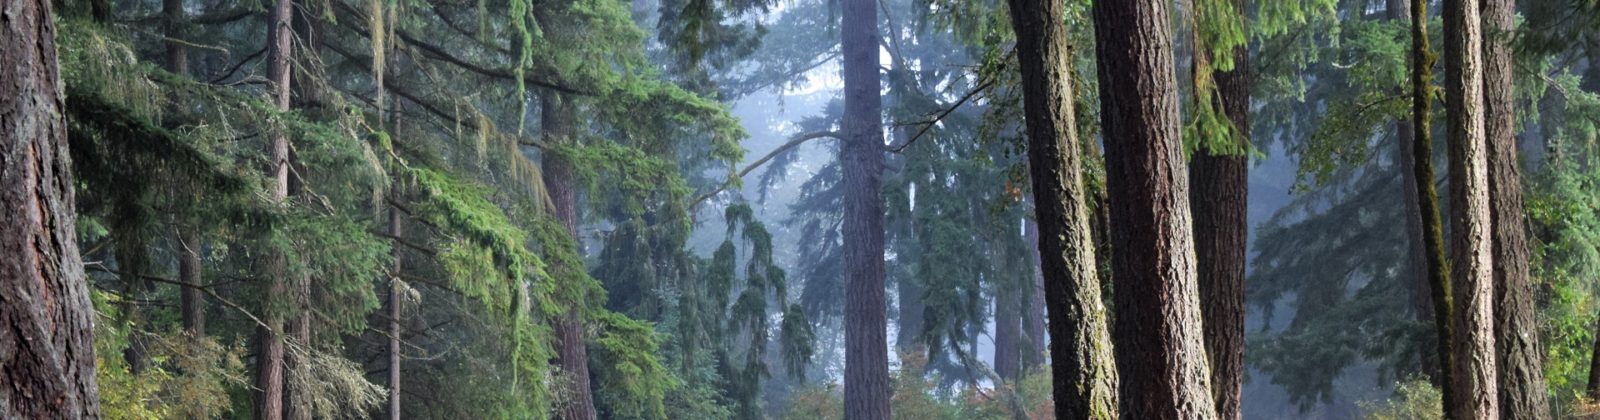 Forest in Tacoma, Washington